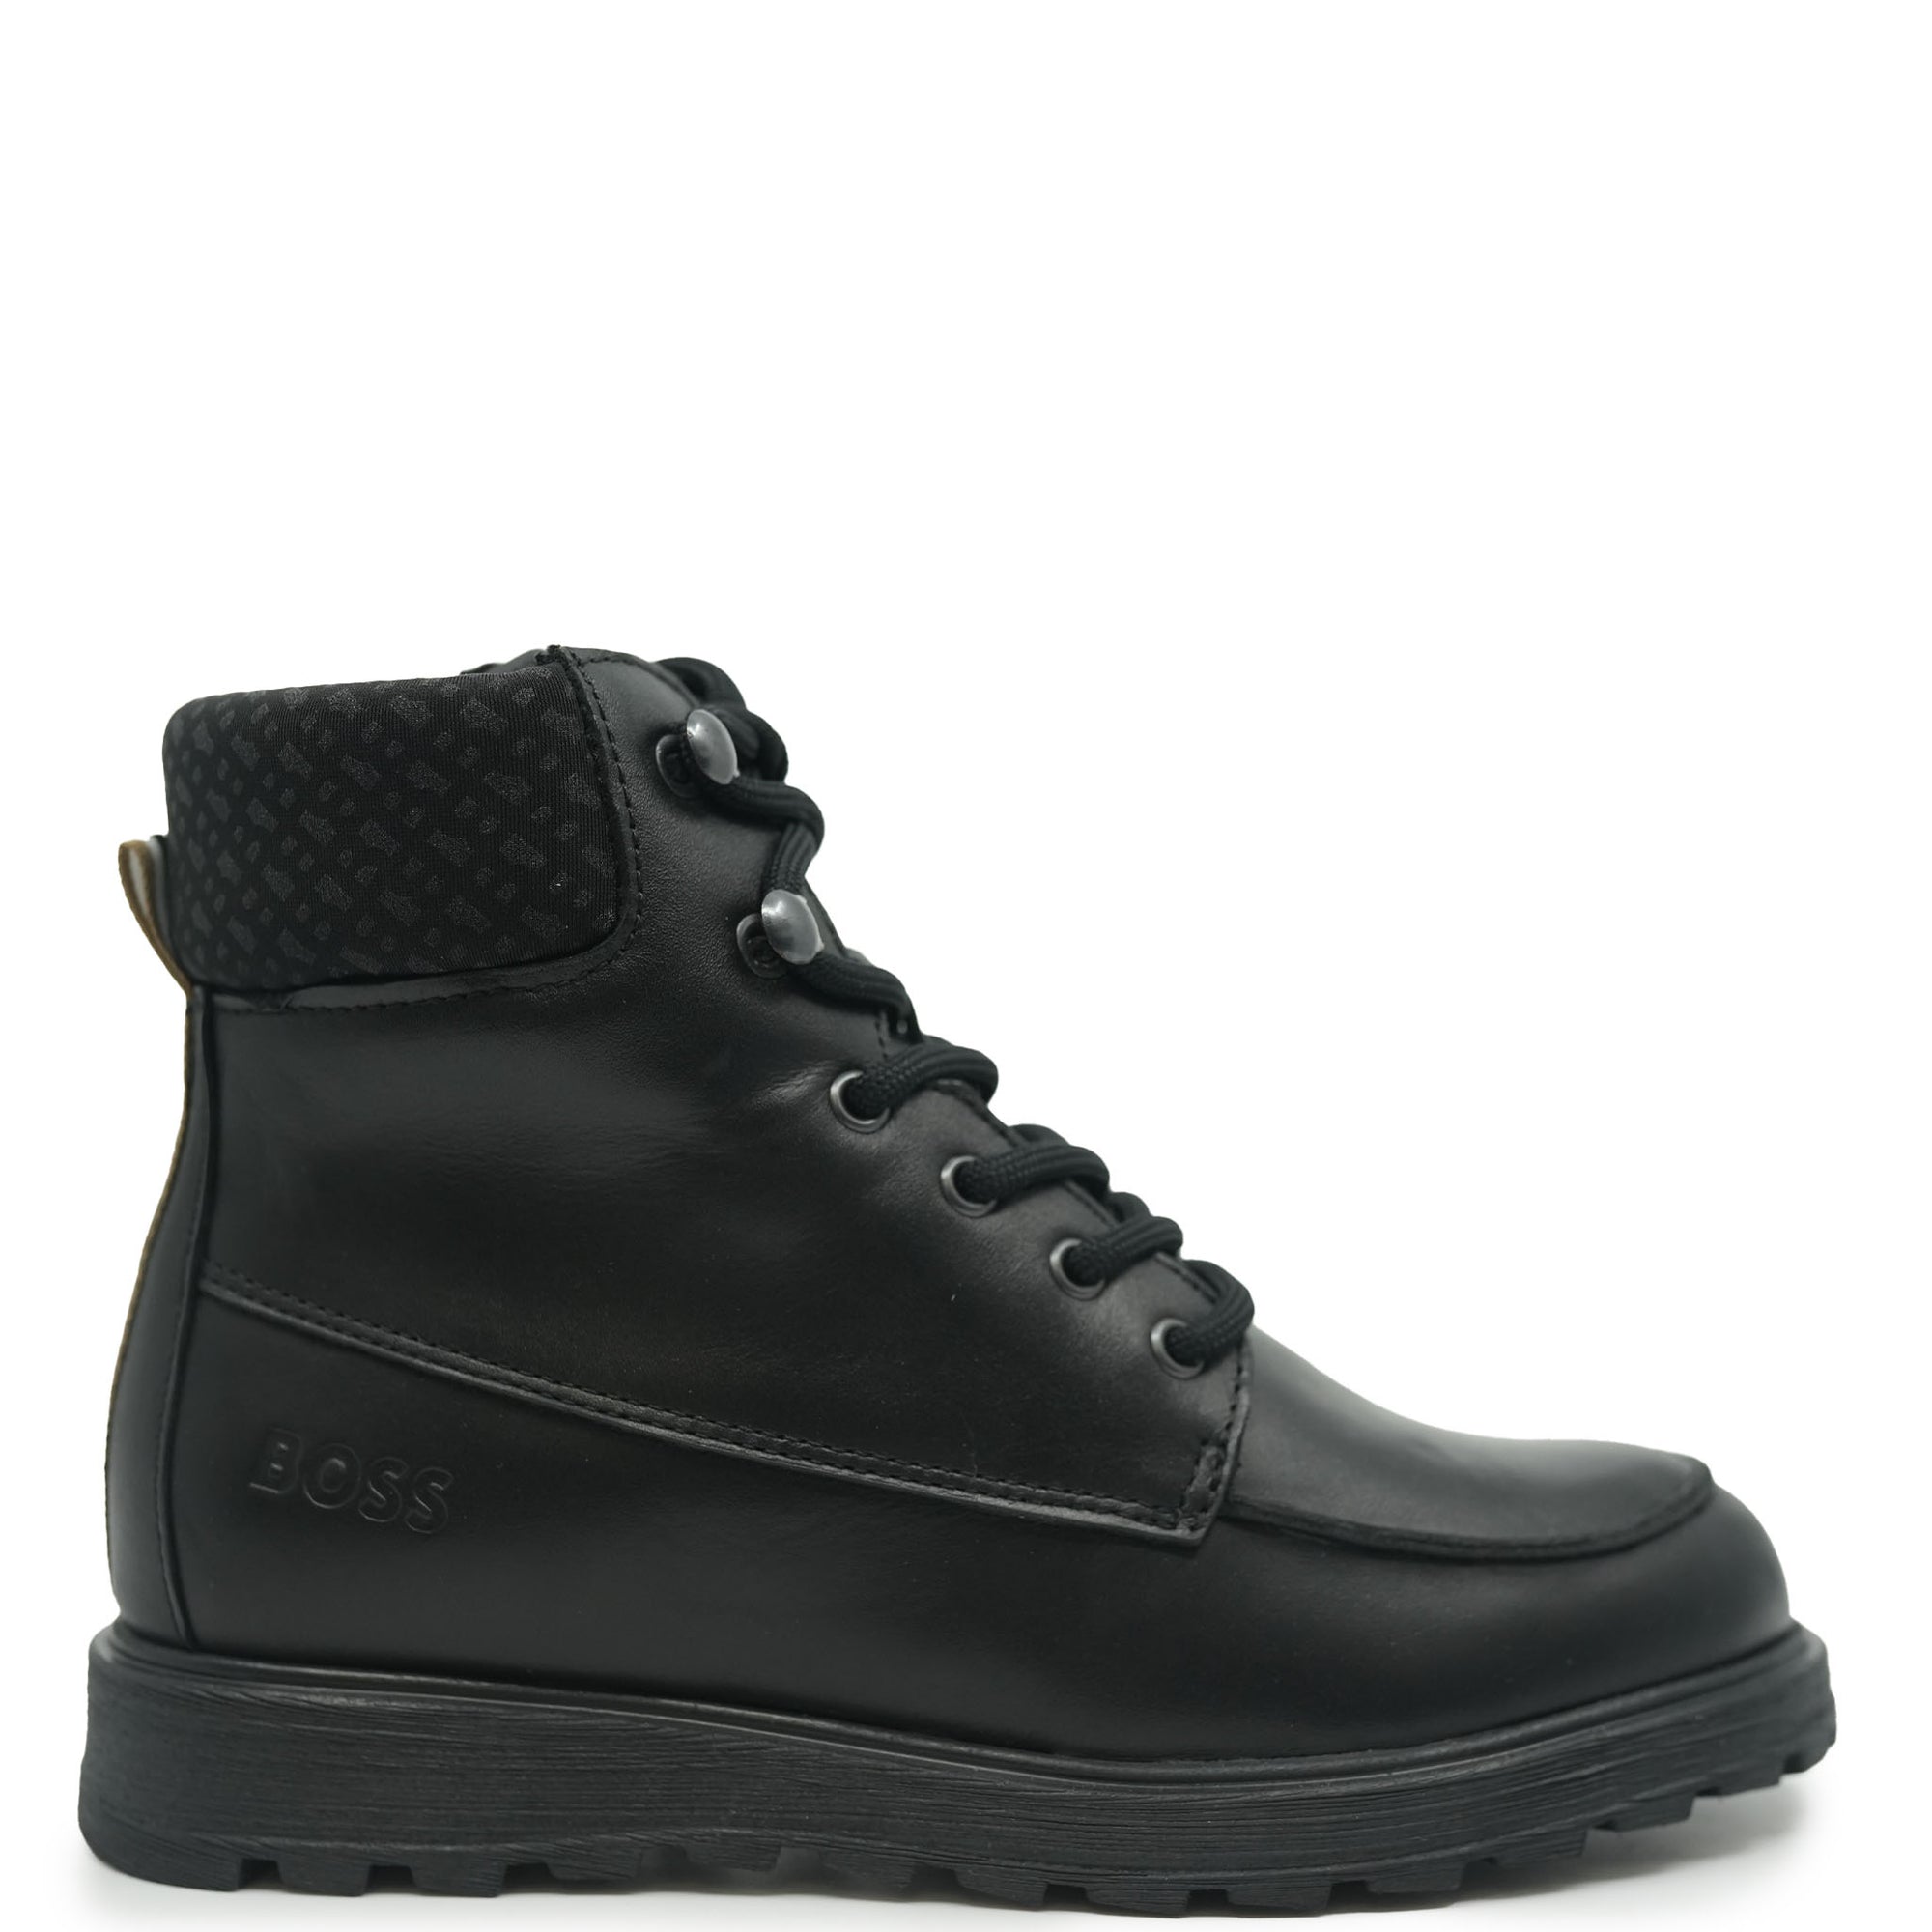 Hugo Boss Black Lace Up Sneaker Boot-Tassel Children Shoes